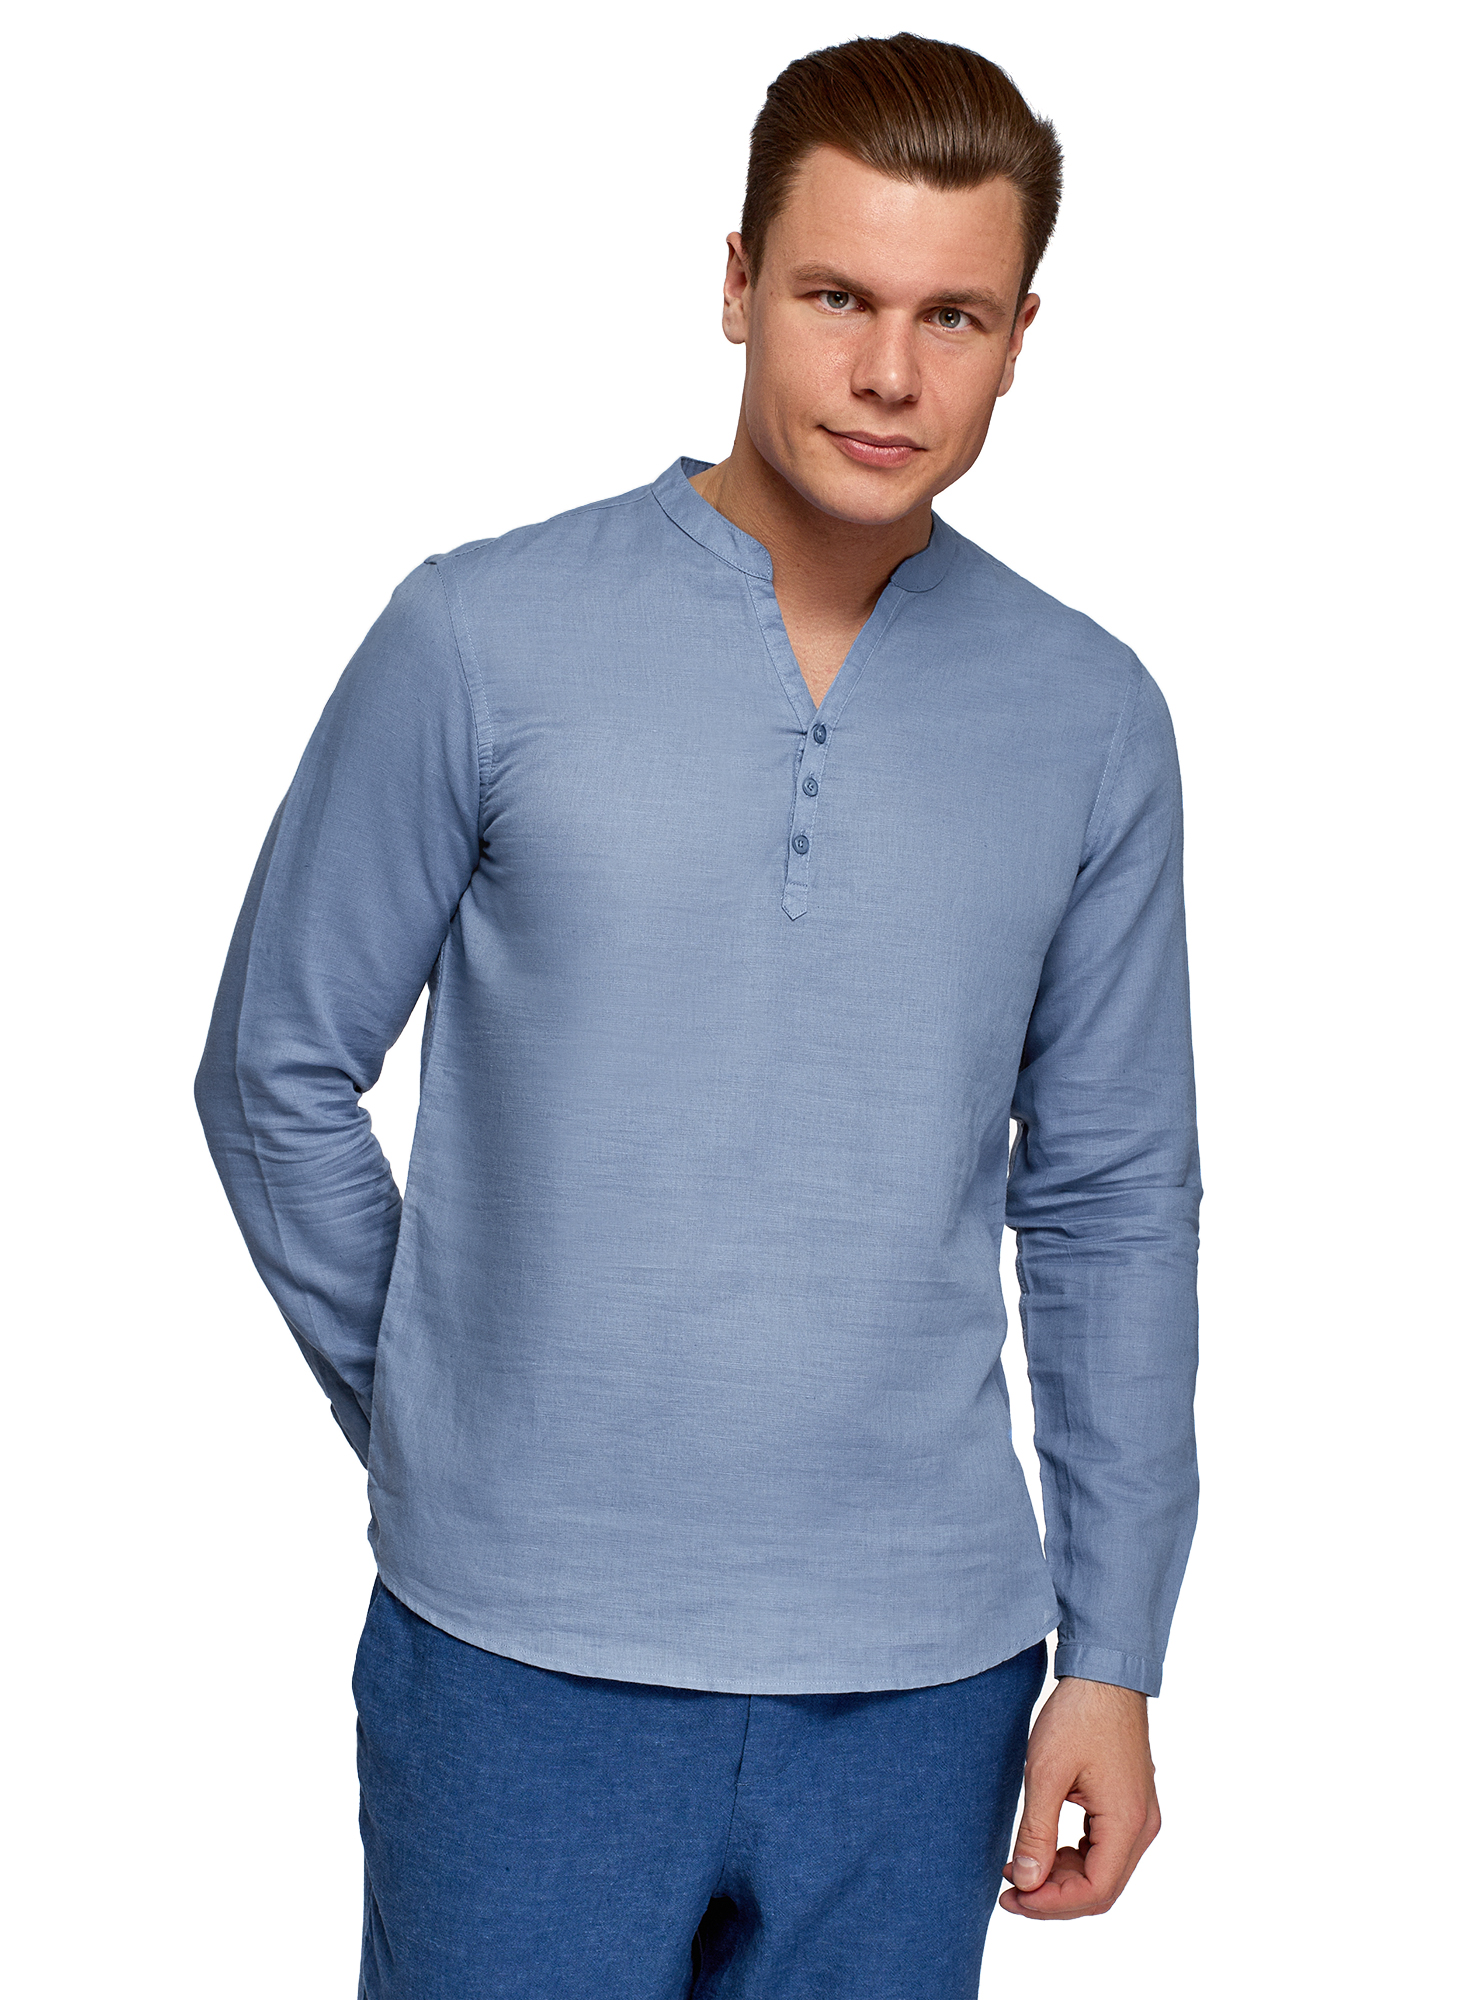 Рубашка мужская oodji 3B320002M-1 синяя XL